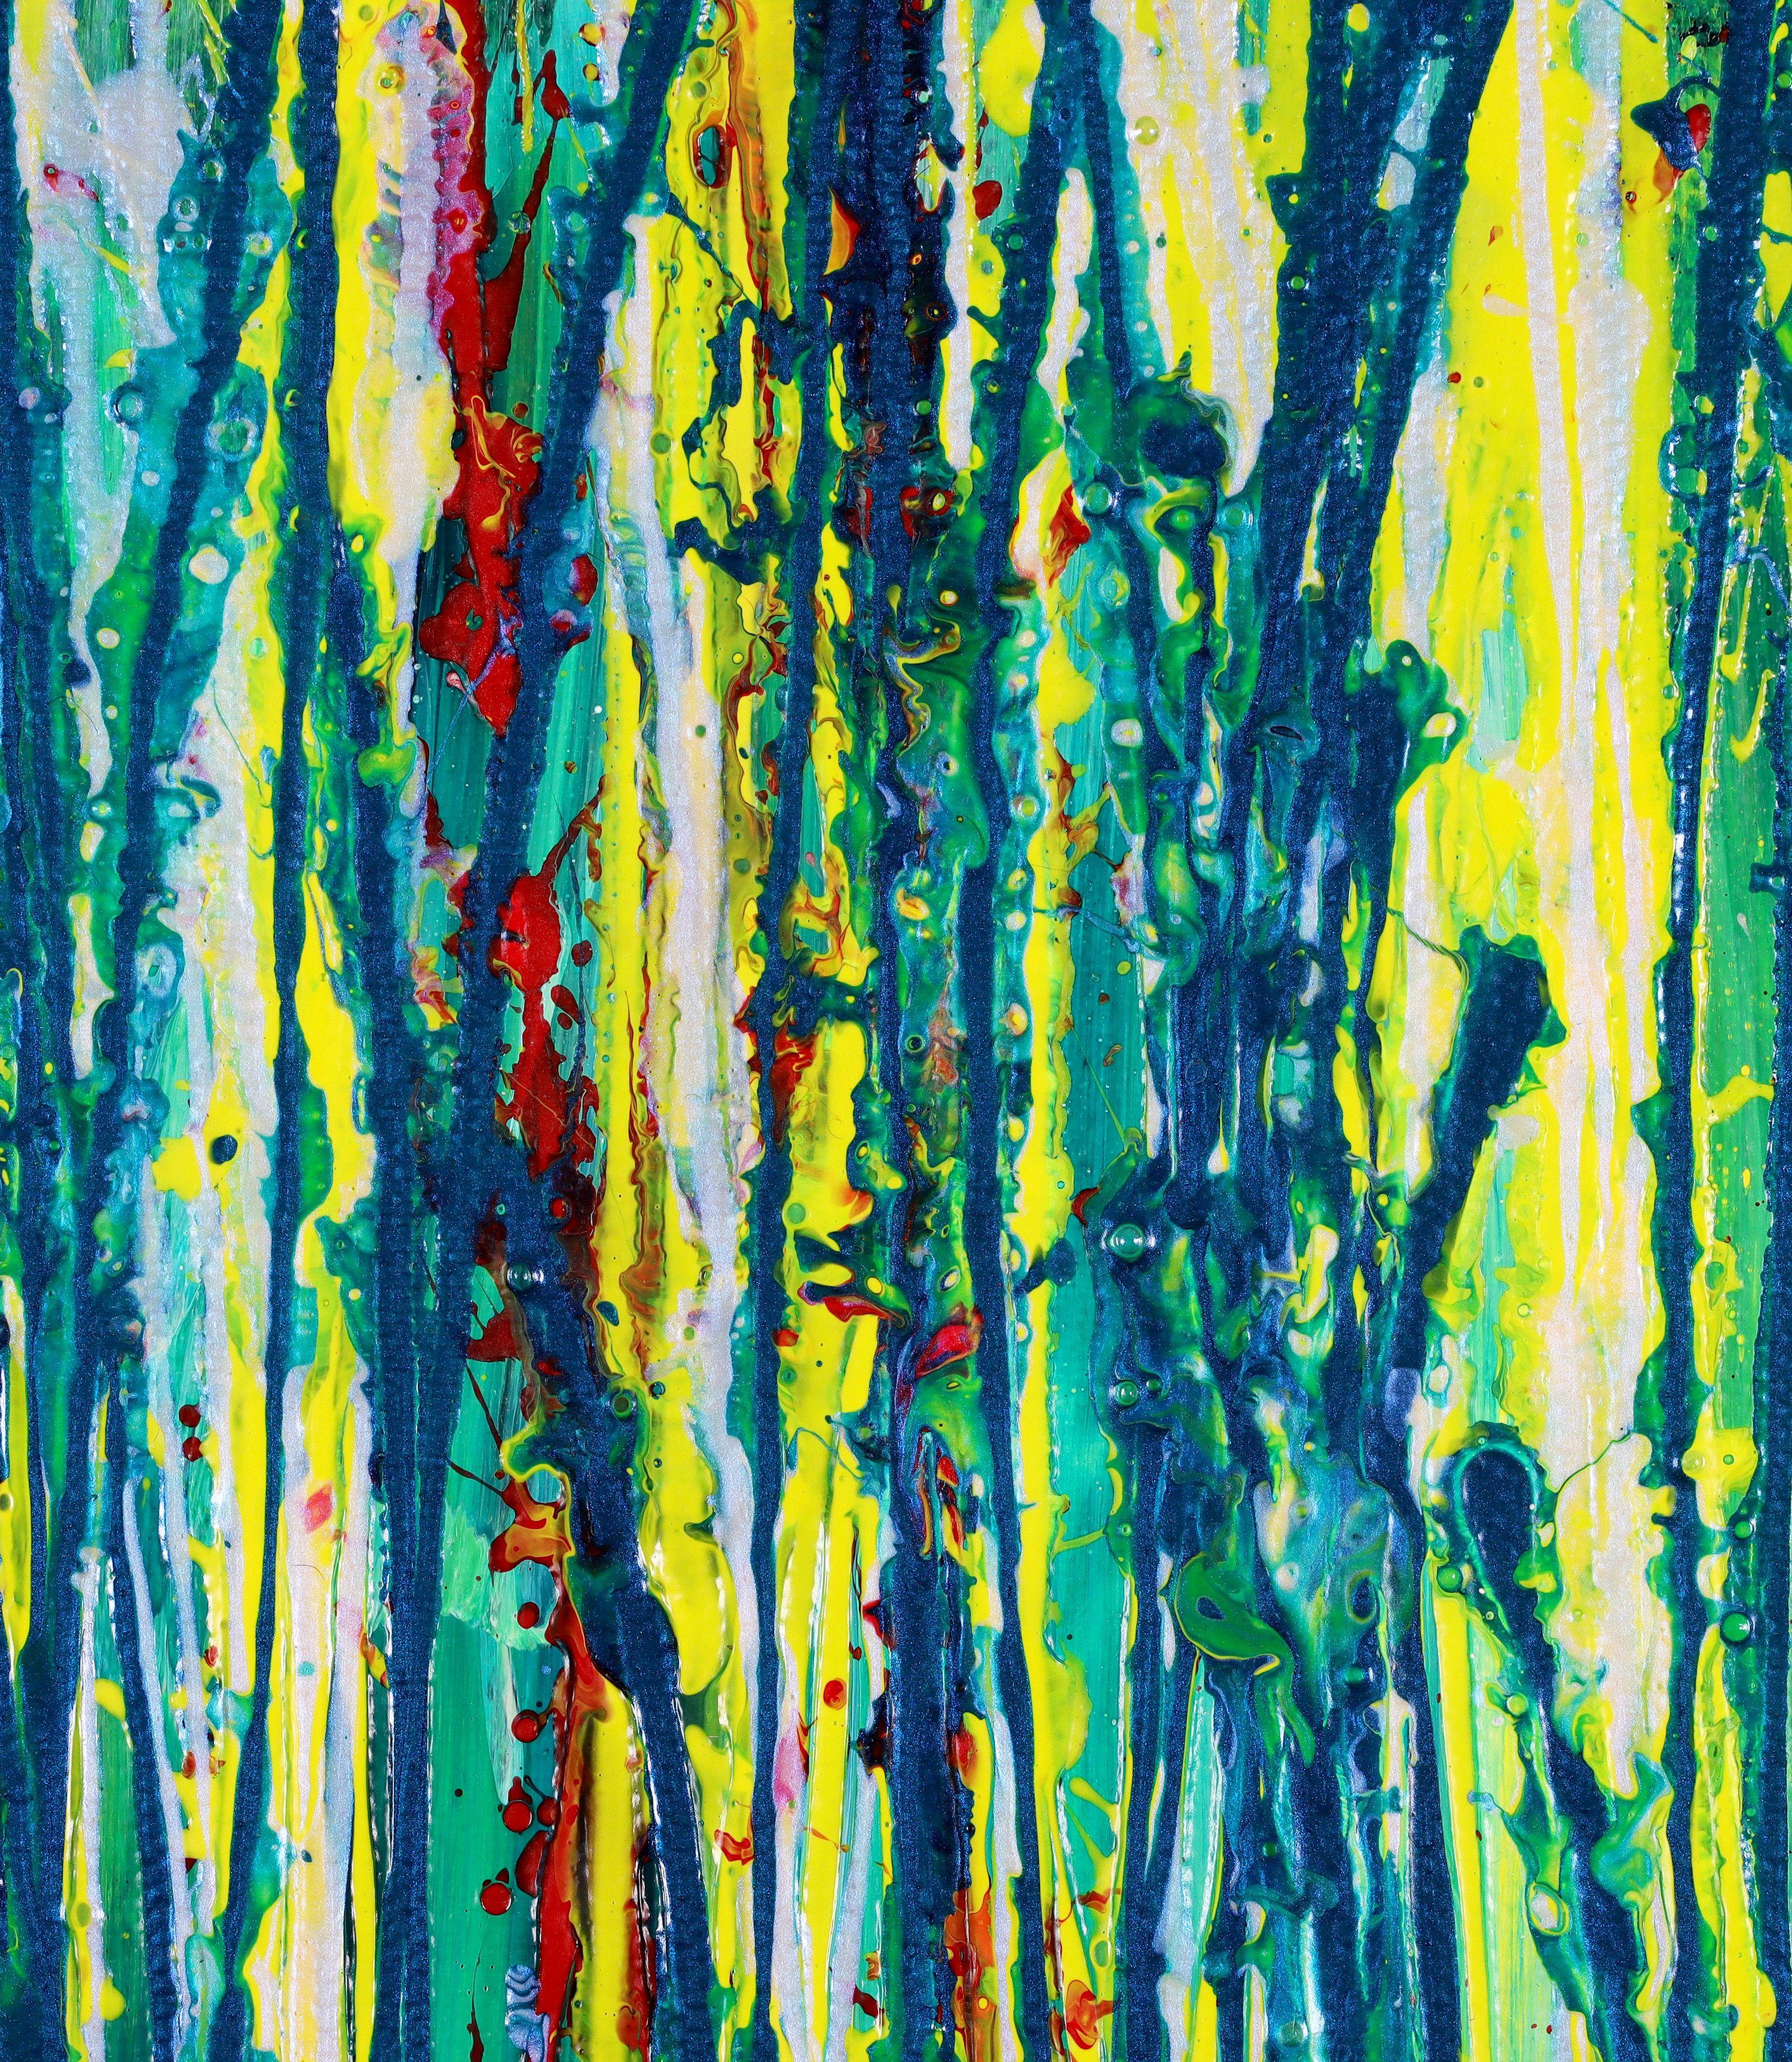 Modernes schillerndes abstraktes Kunstwerk mit vielen dynamischen Nieseln und Tropfen auf blauem tiefgrünem und gelbem Hintergrund. Vorne signiert.    Fertig zum Aufhängen - keine Rahmung erforderlich!    Ich lege ein Echtheitszertifikat bei, in dem